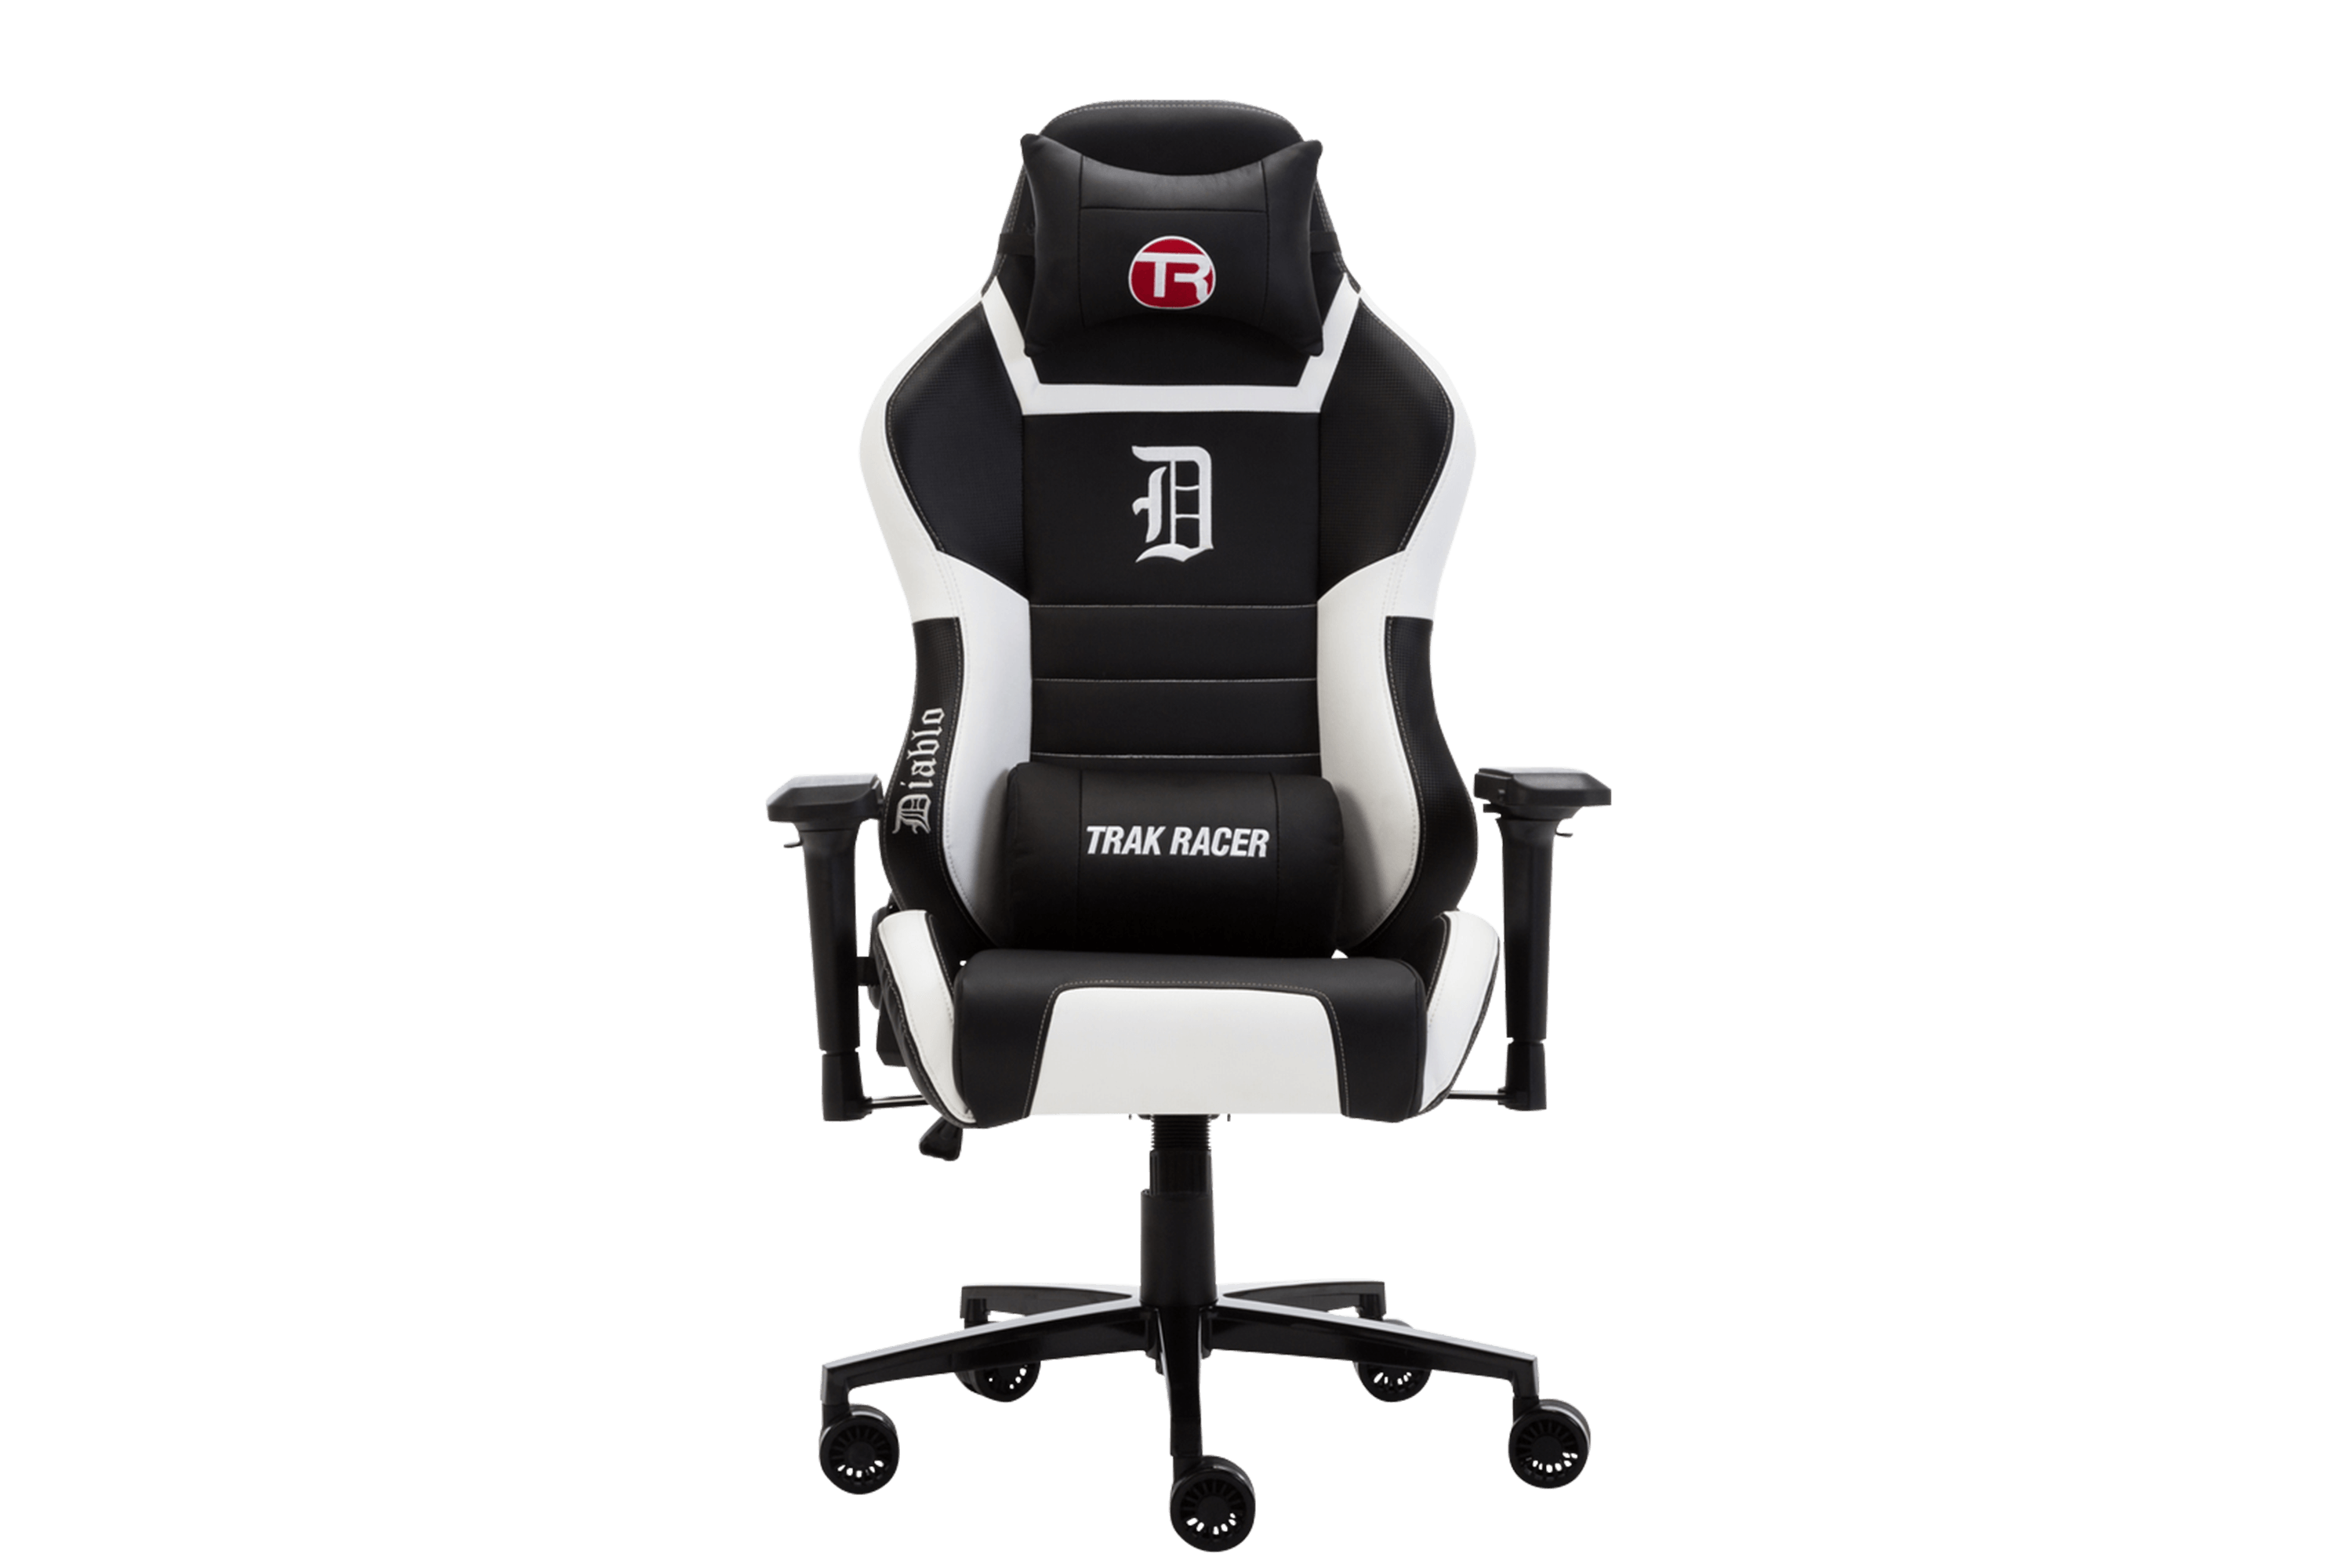 Trak Racer DIABLO Premium Gaming Chair - Superior PU Leather